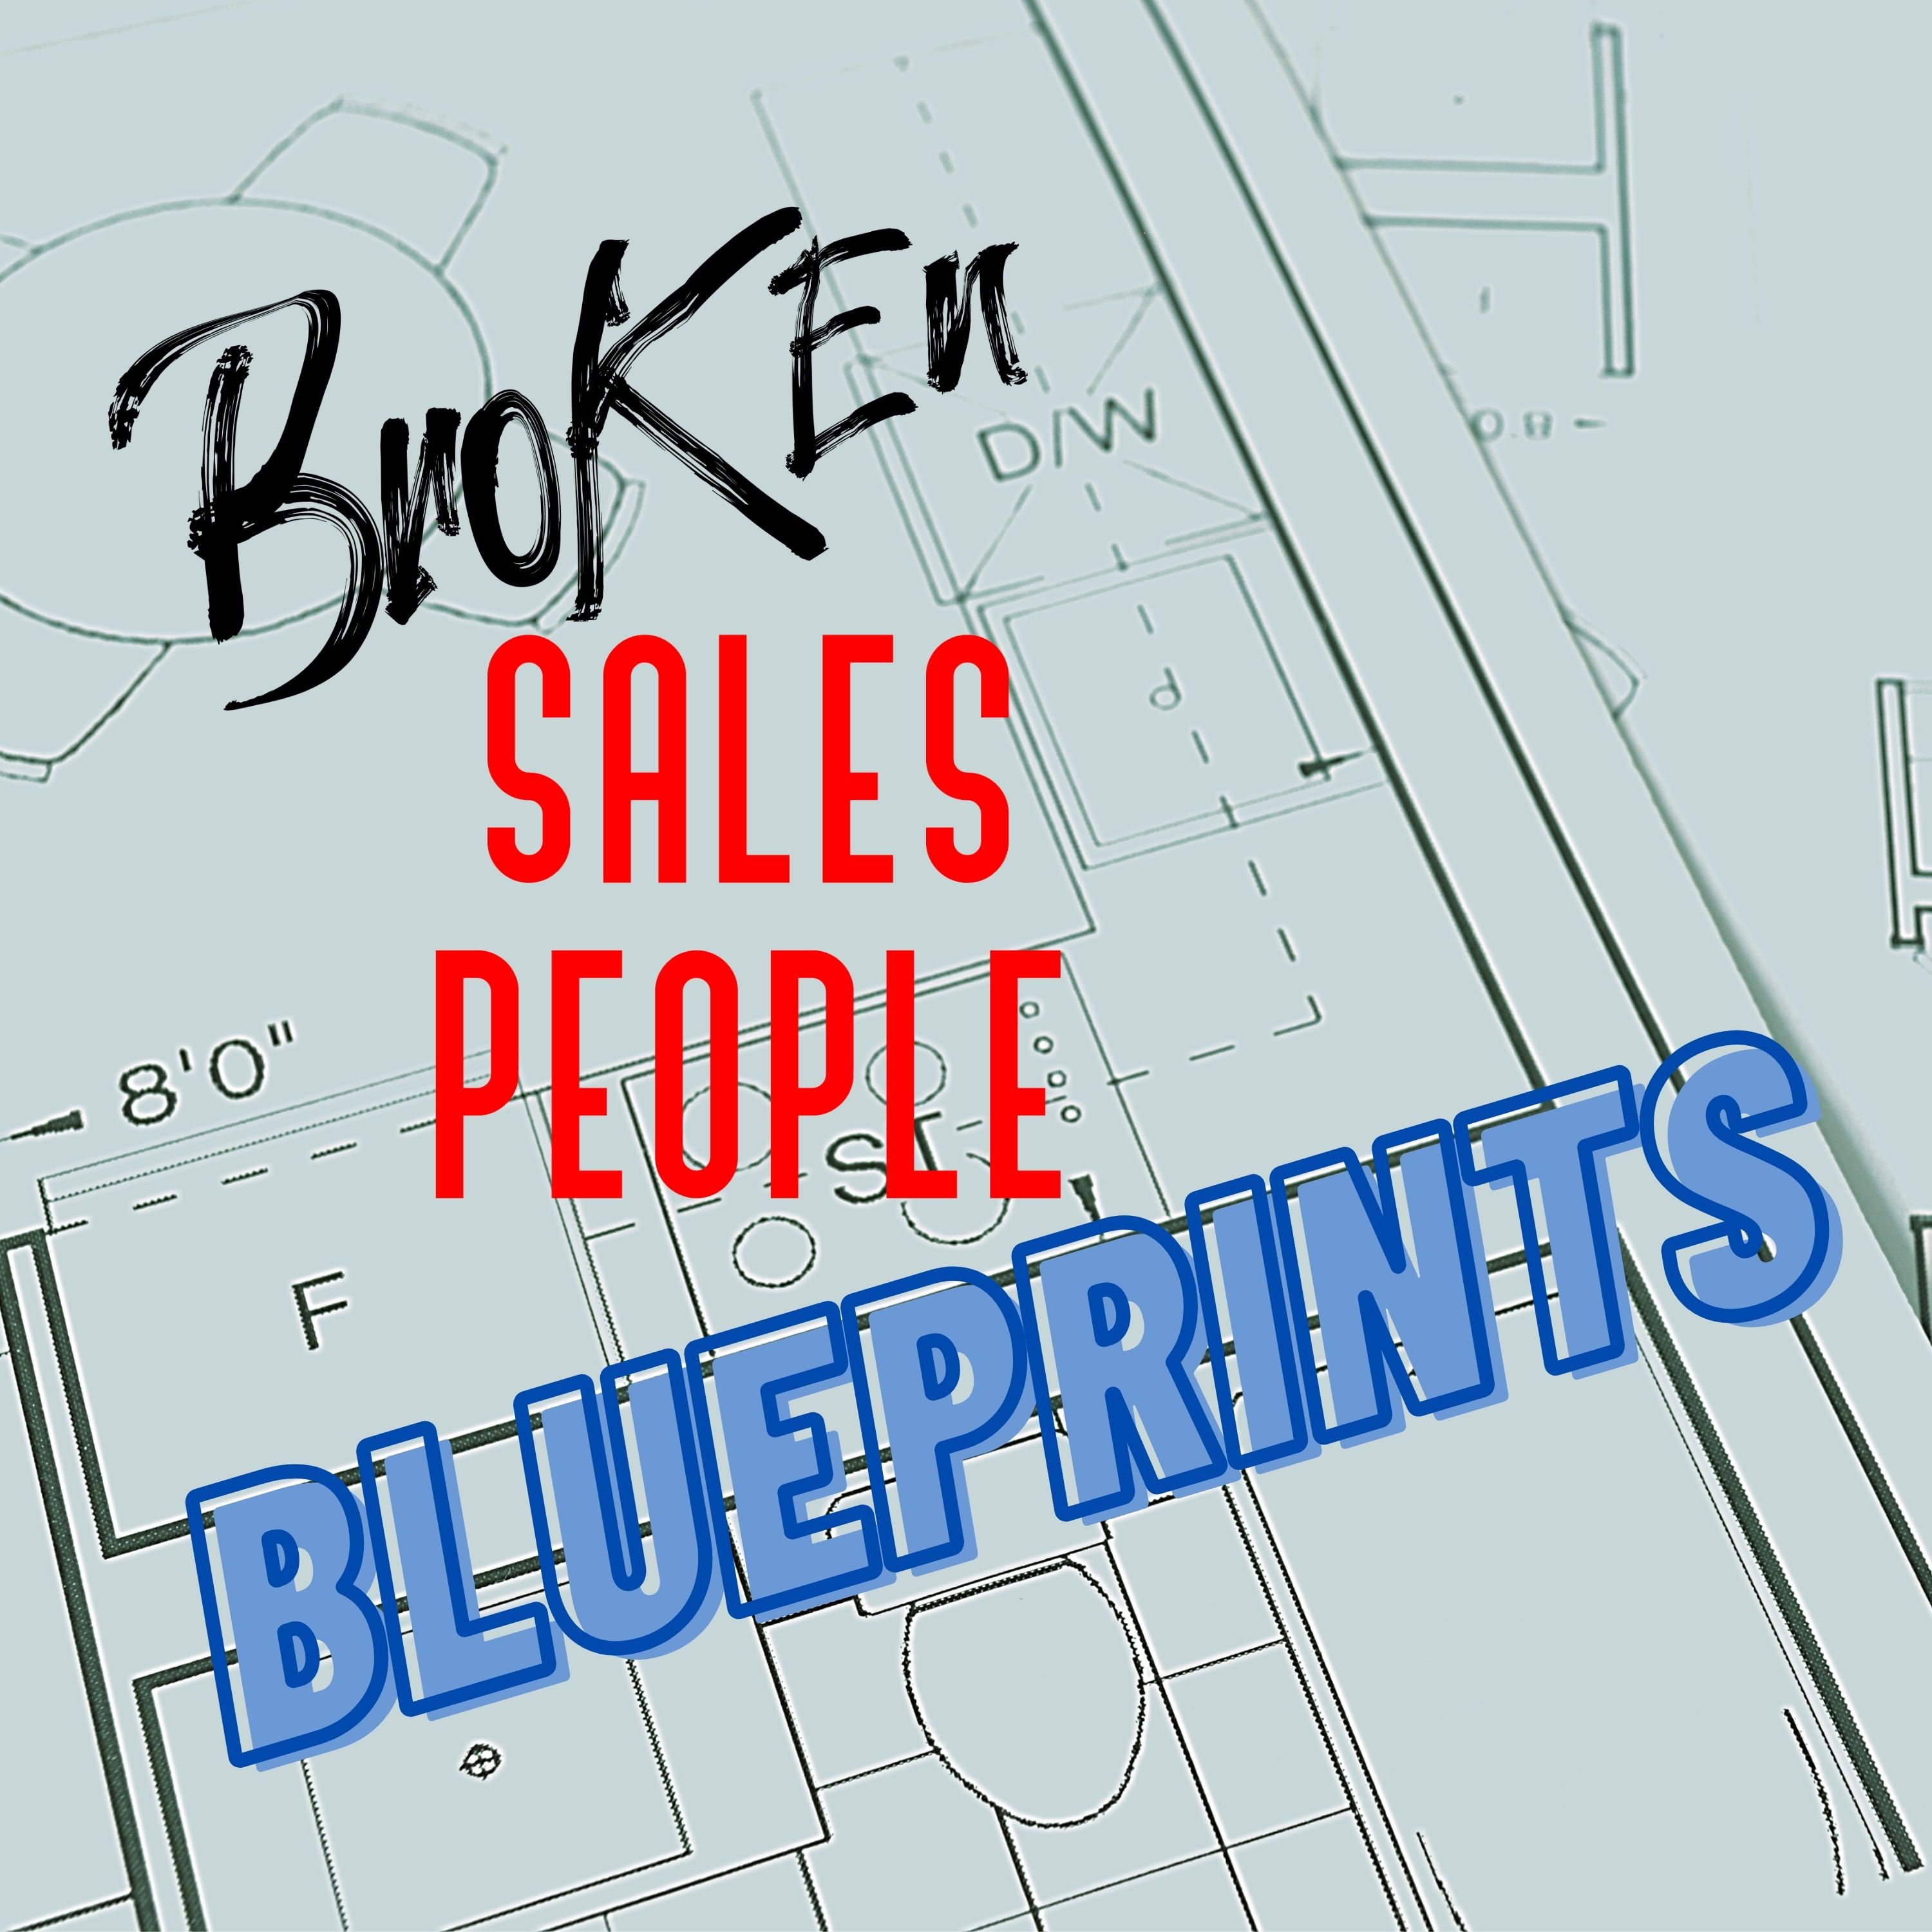 Broken Salespeople Blueprints